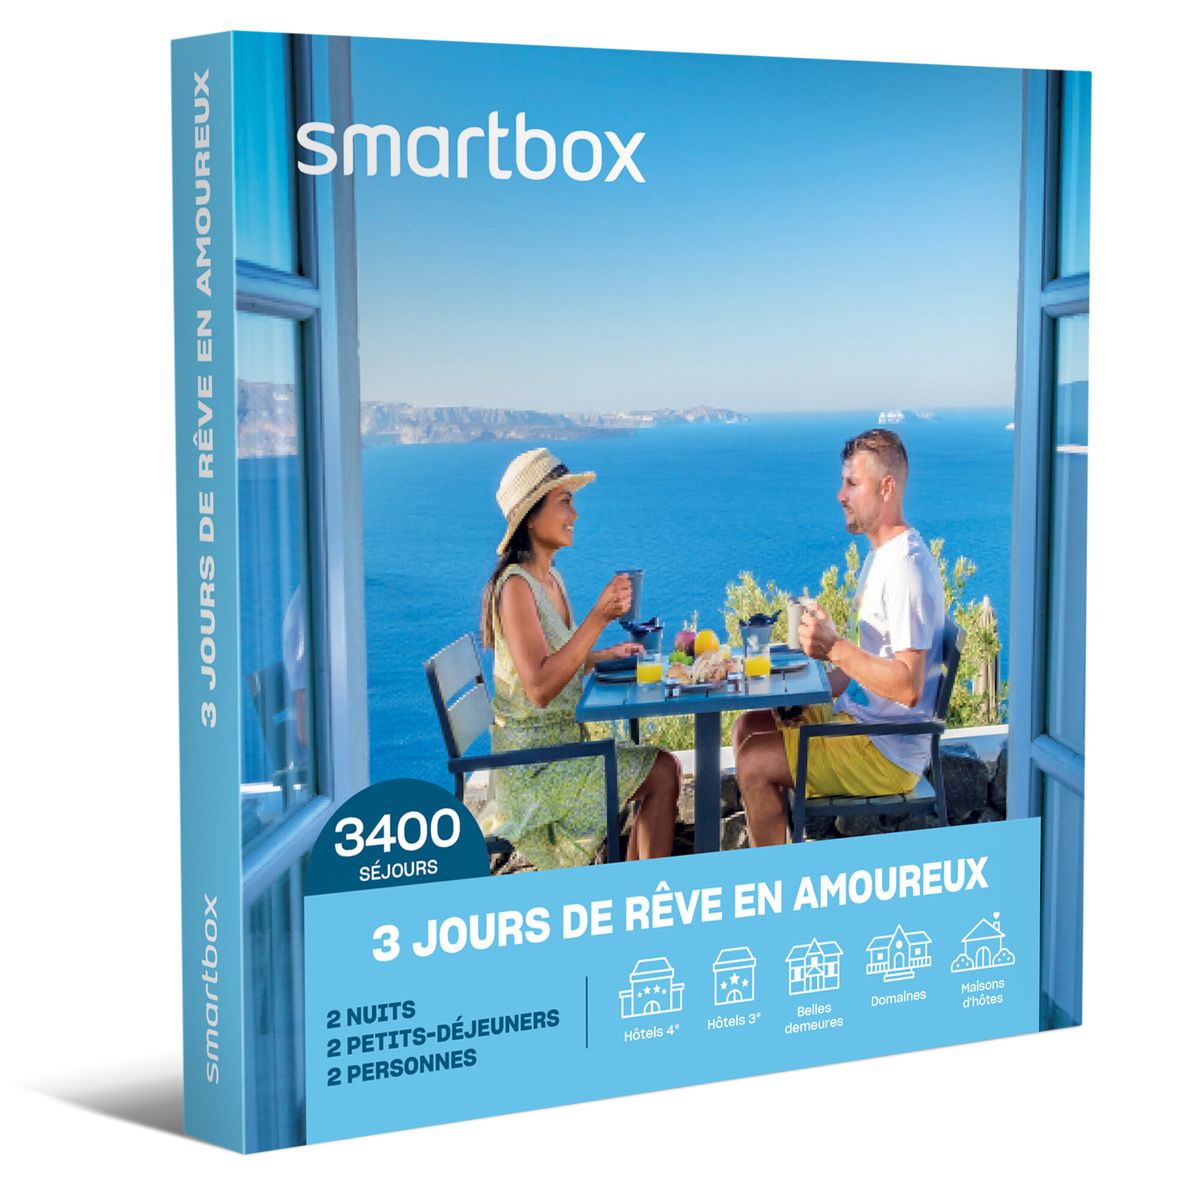 SMARTBOX - Coffret Cadeau homme femme couple - Cours de cuisine et